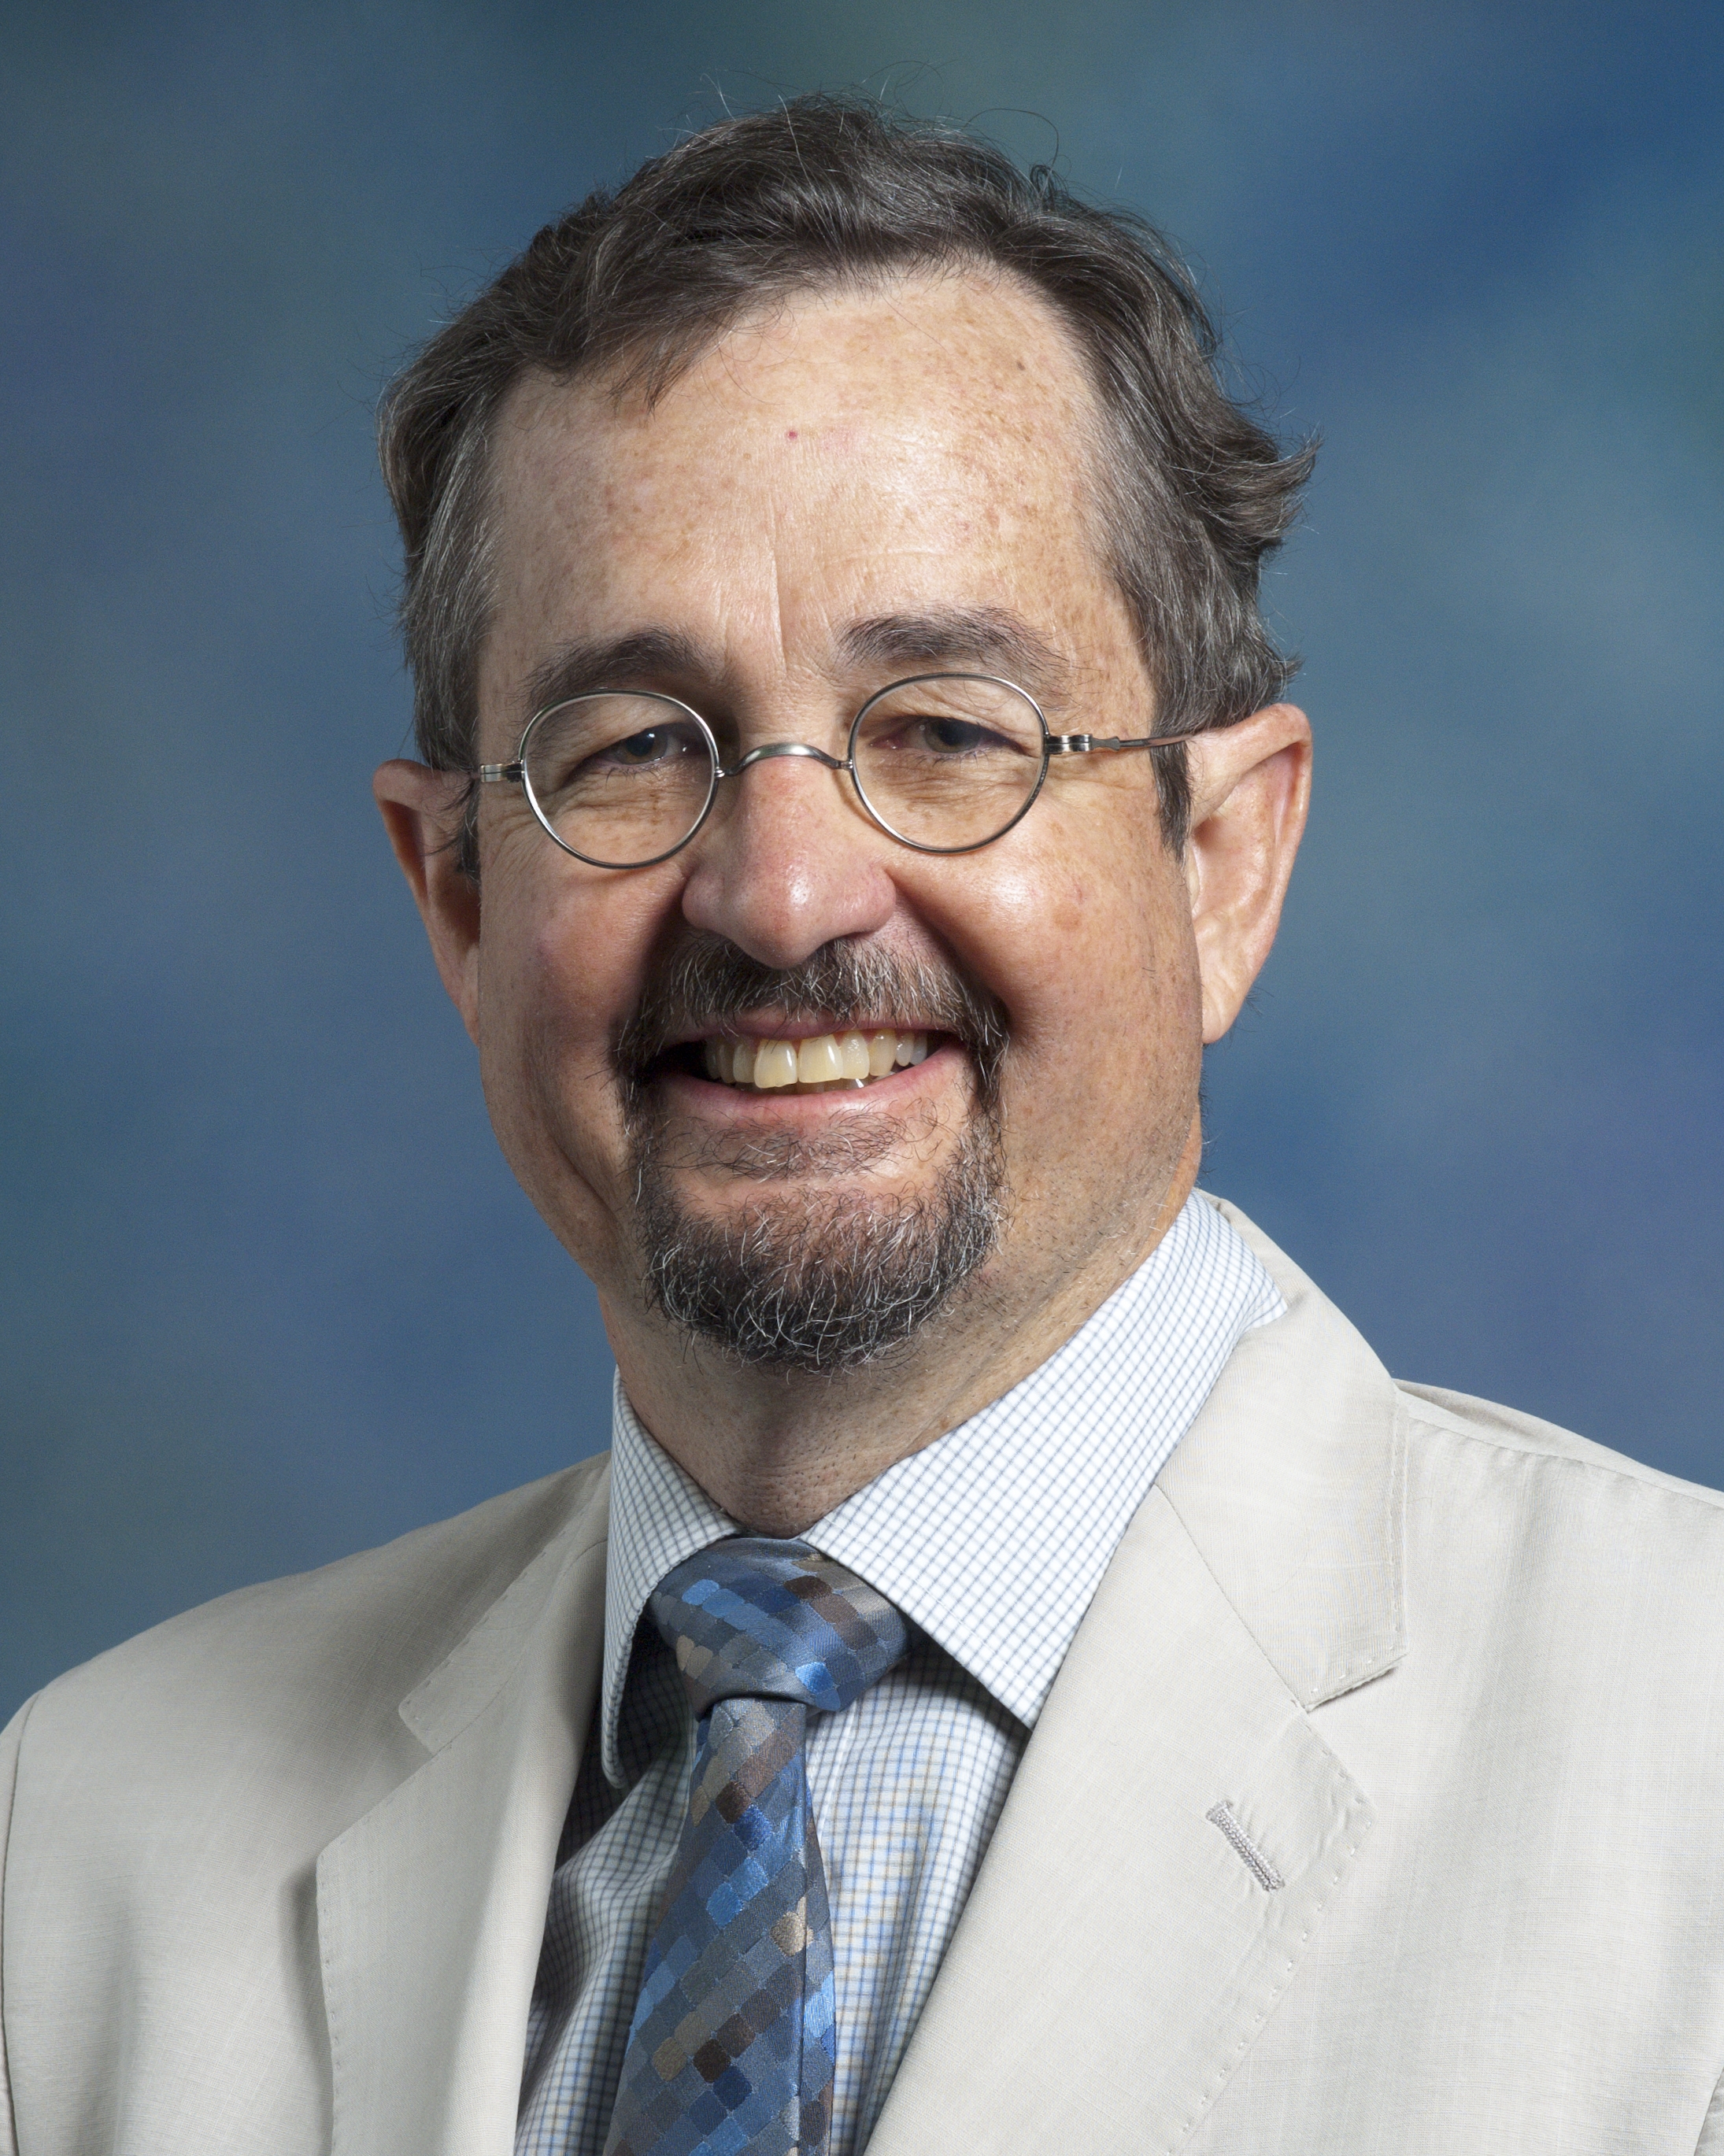 Professor Michael Carter to Visit Campus